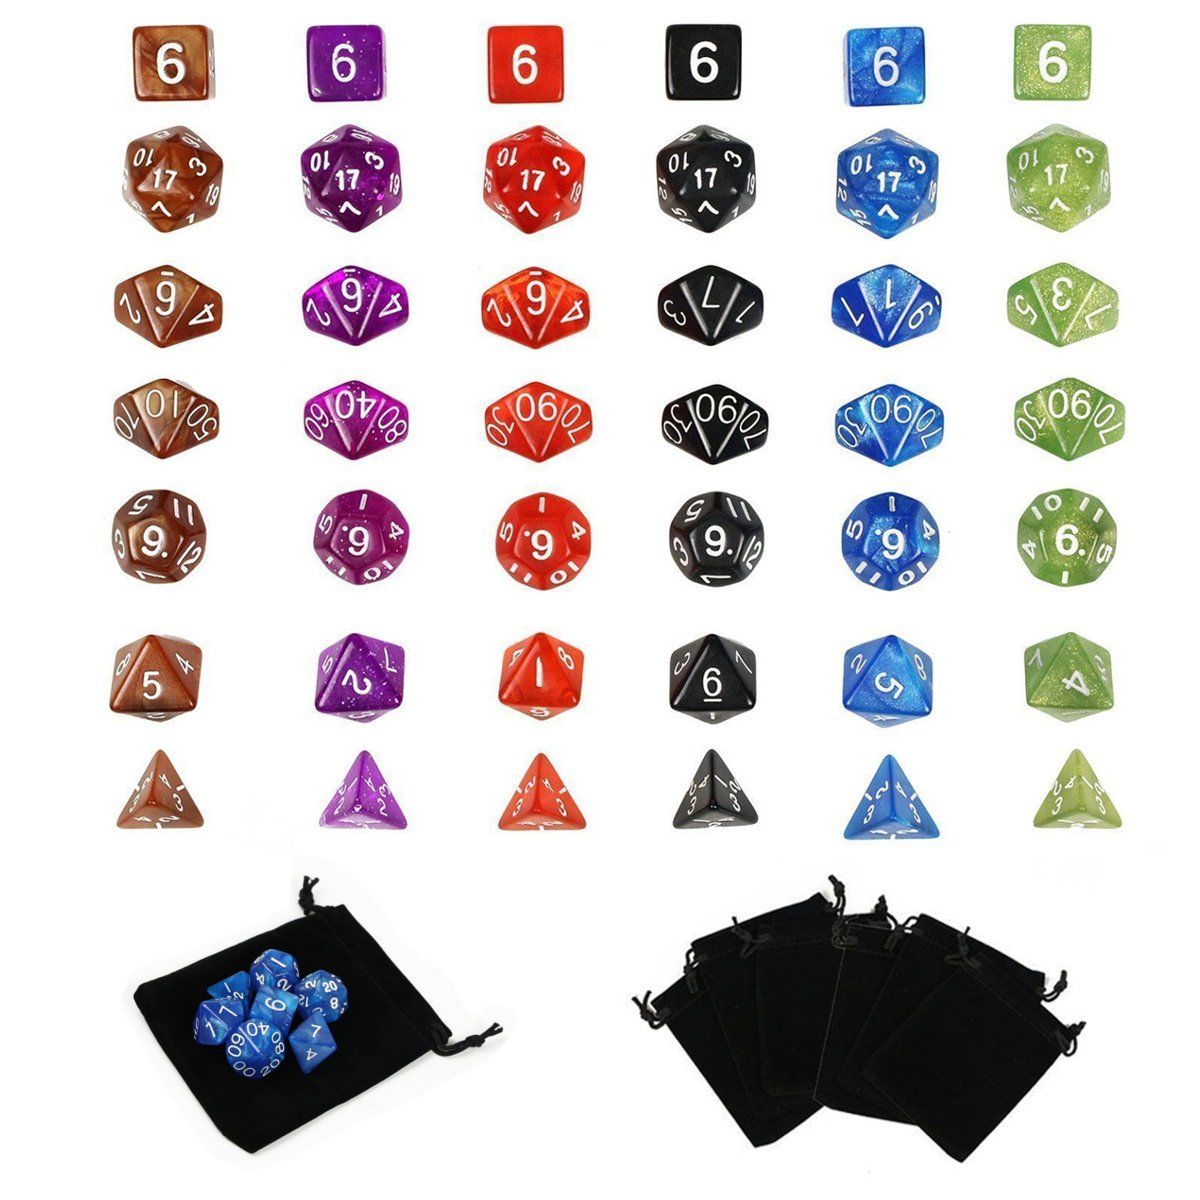 42-Pcs-Polyhedral-Board-RPG-MTG-Dice-Sets-6-Color-4D-6D-8D-10D-12D-20D-with-6-Pouch-1220134